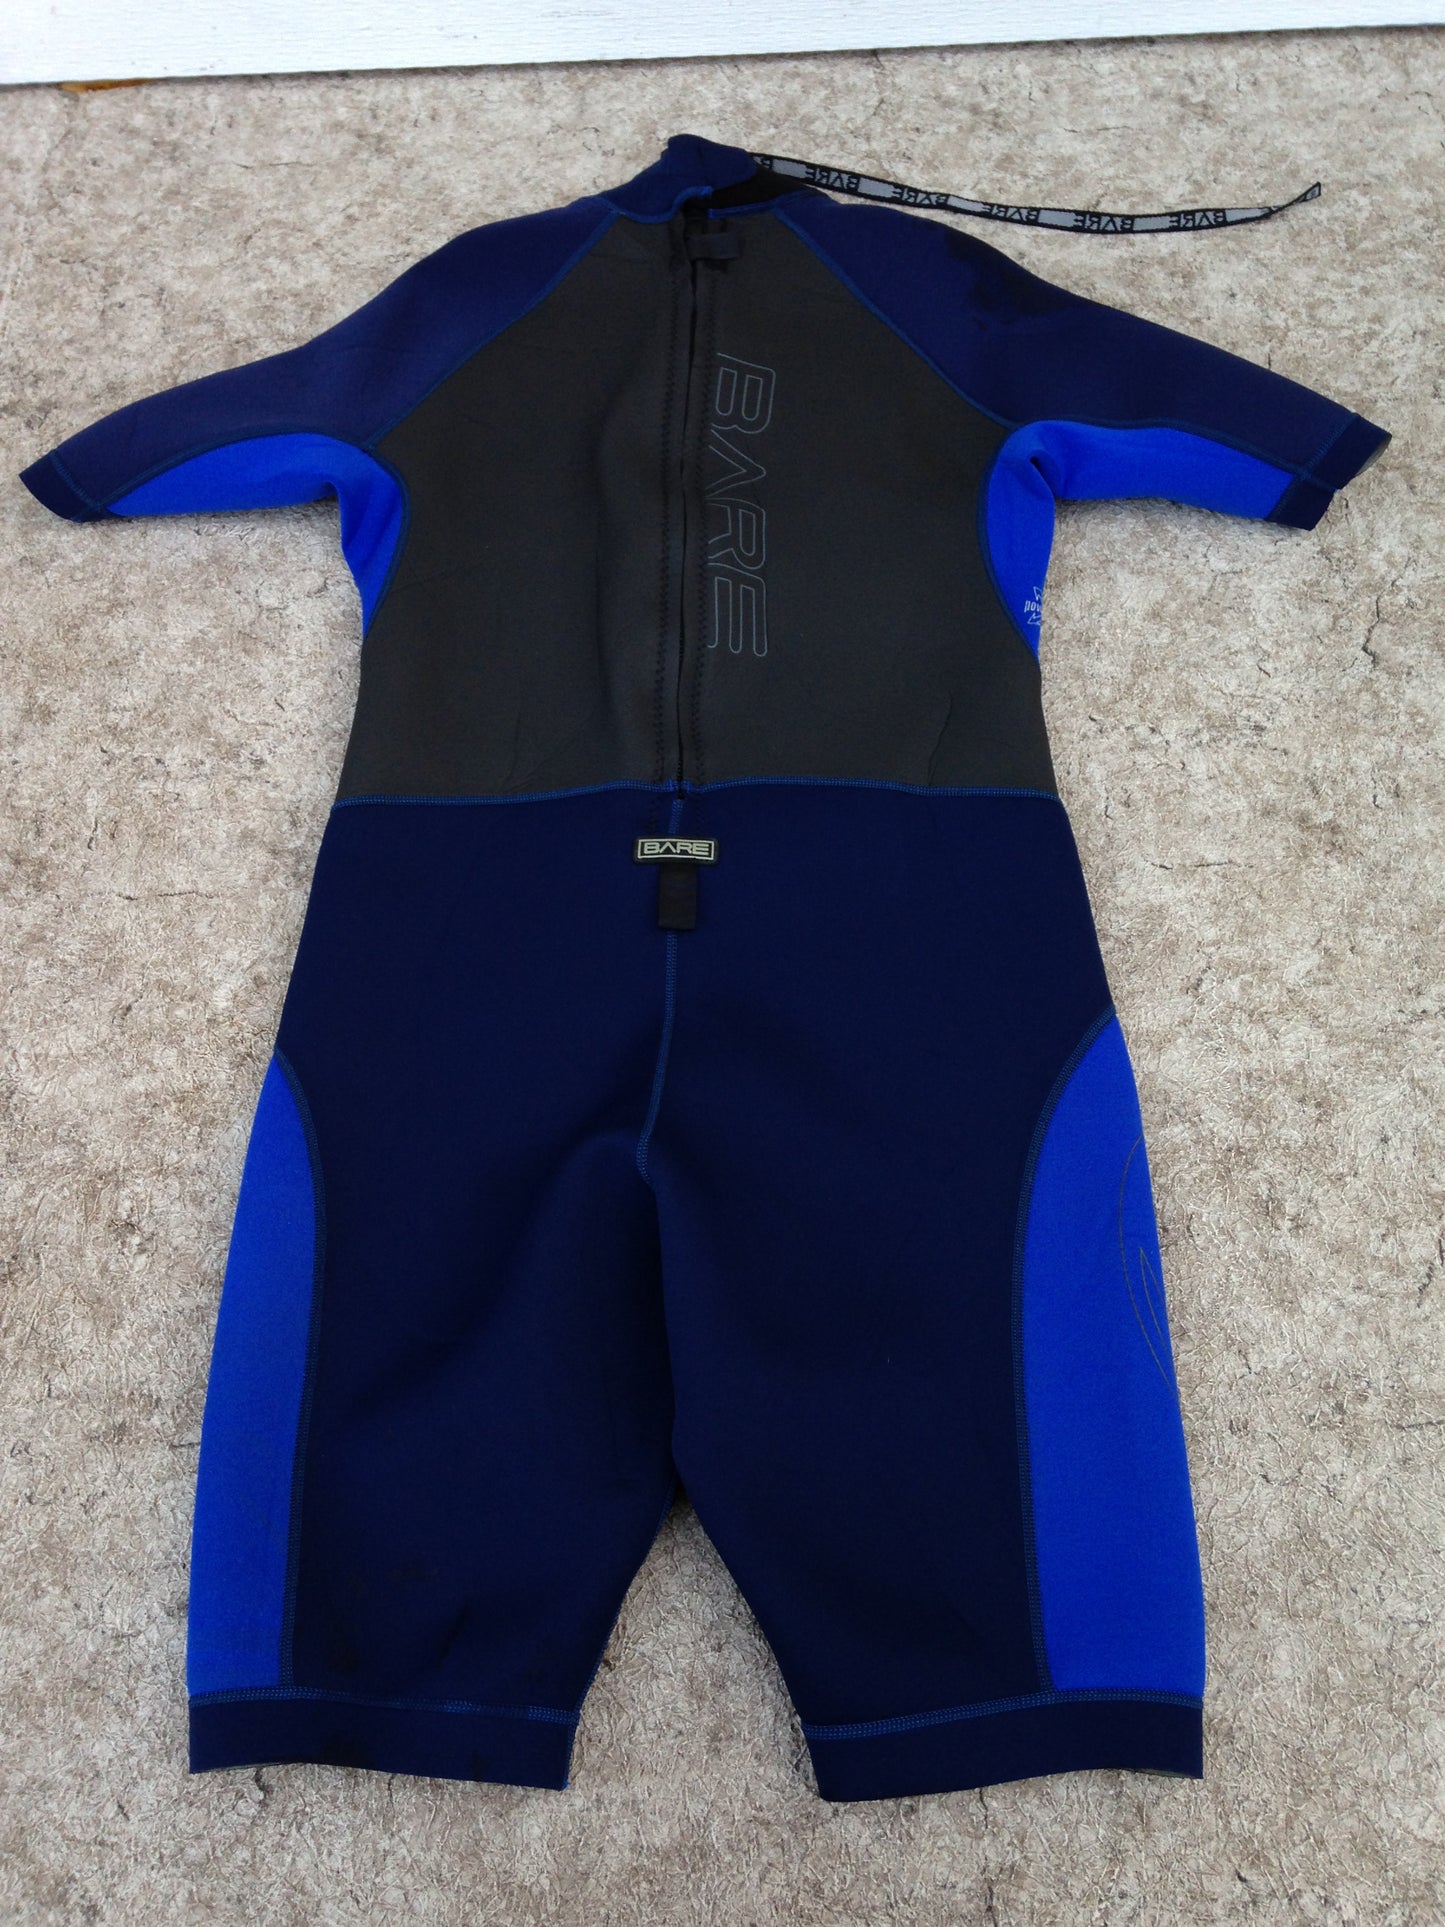 Wetsuit Men's Size X Large Bare 2-3 mm Blue Grey Excellent